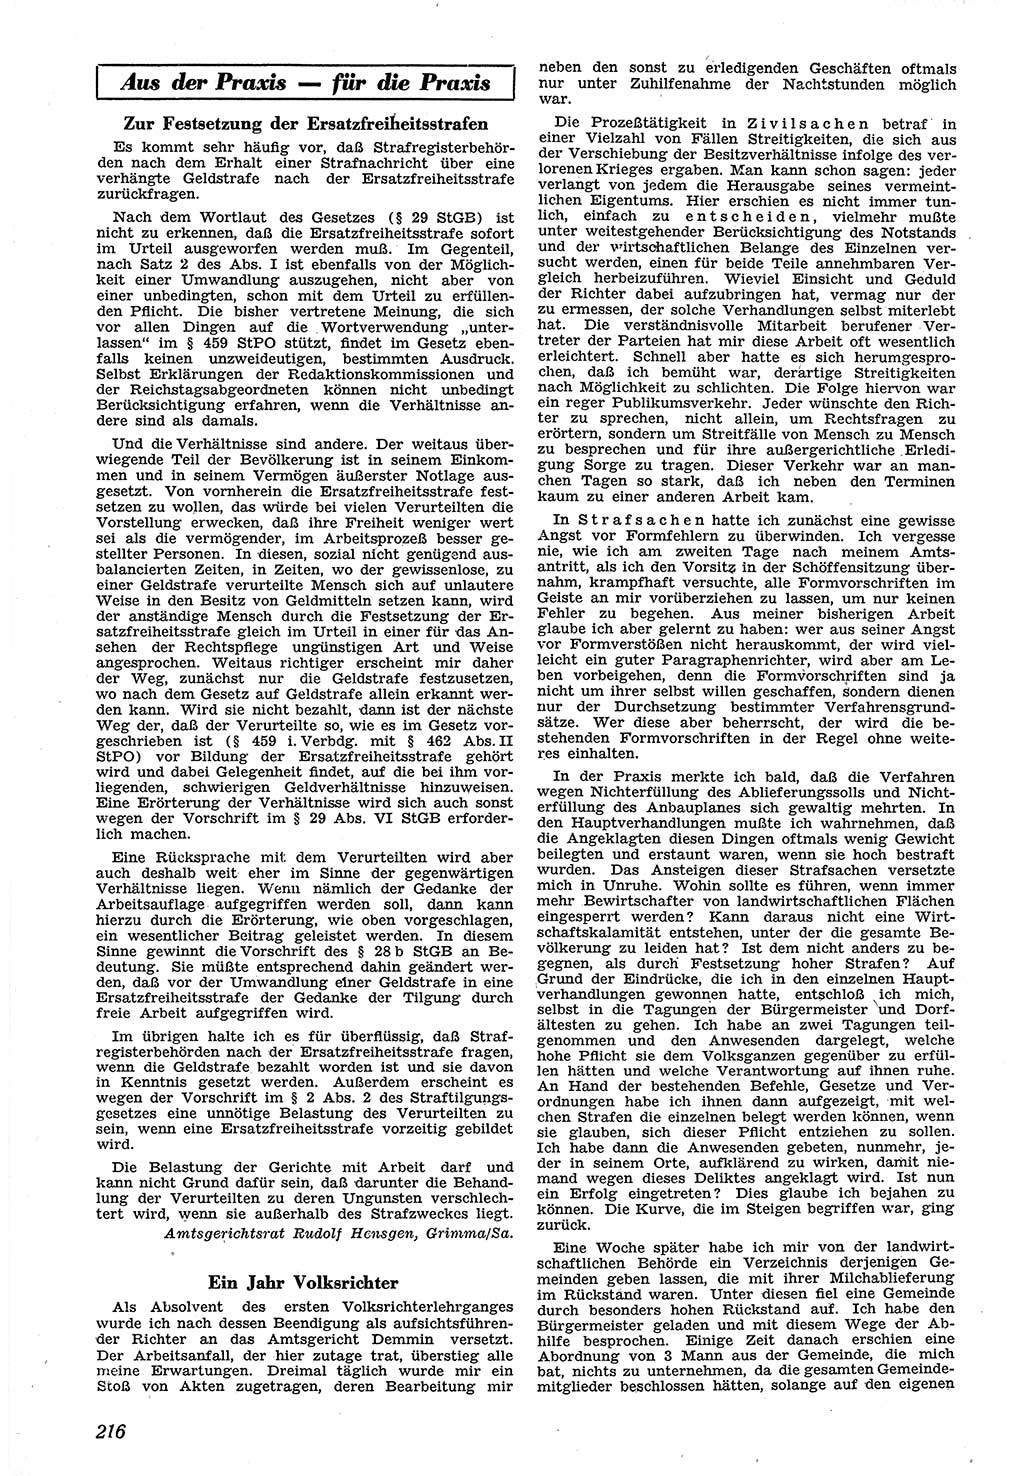 Neue Justiz (NJ), Zeitschrift für Recht und Rechtswissenschaft [Sowjetische Besatzungszone (SBZ) Deutschland], 1. Jahrgang 1947, Seite 216 (NJ SBZ Dtl. 1947, S. 216)